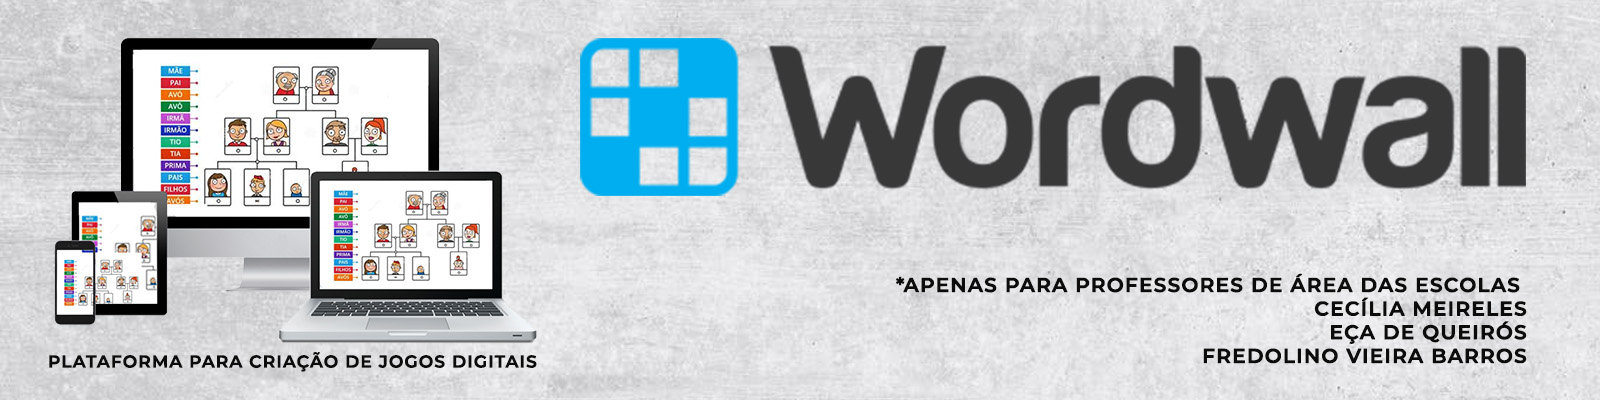 Como criar uma atividade de caça-palavras? – Wordwall